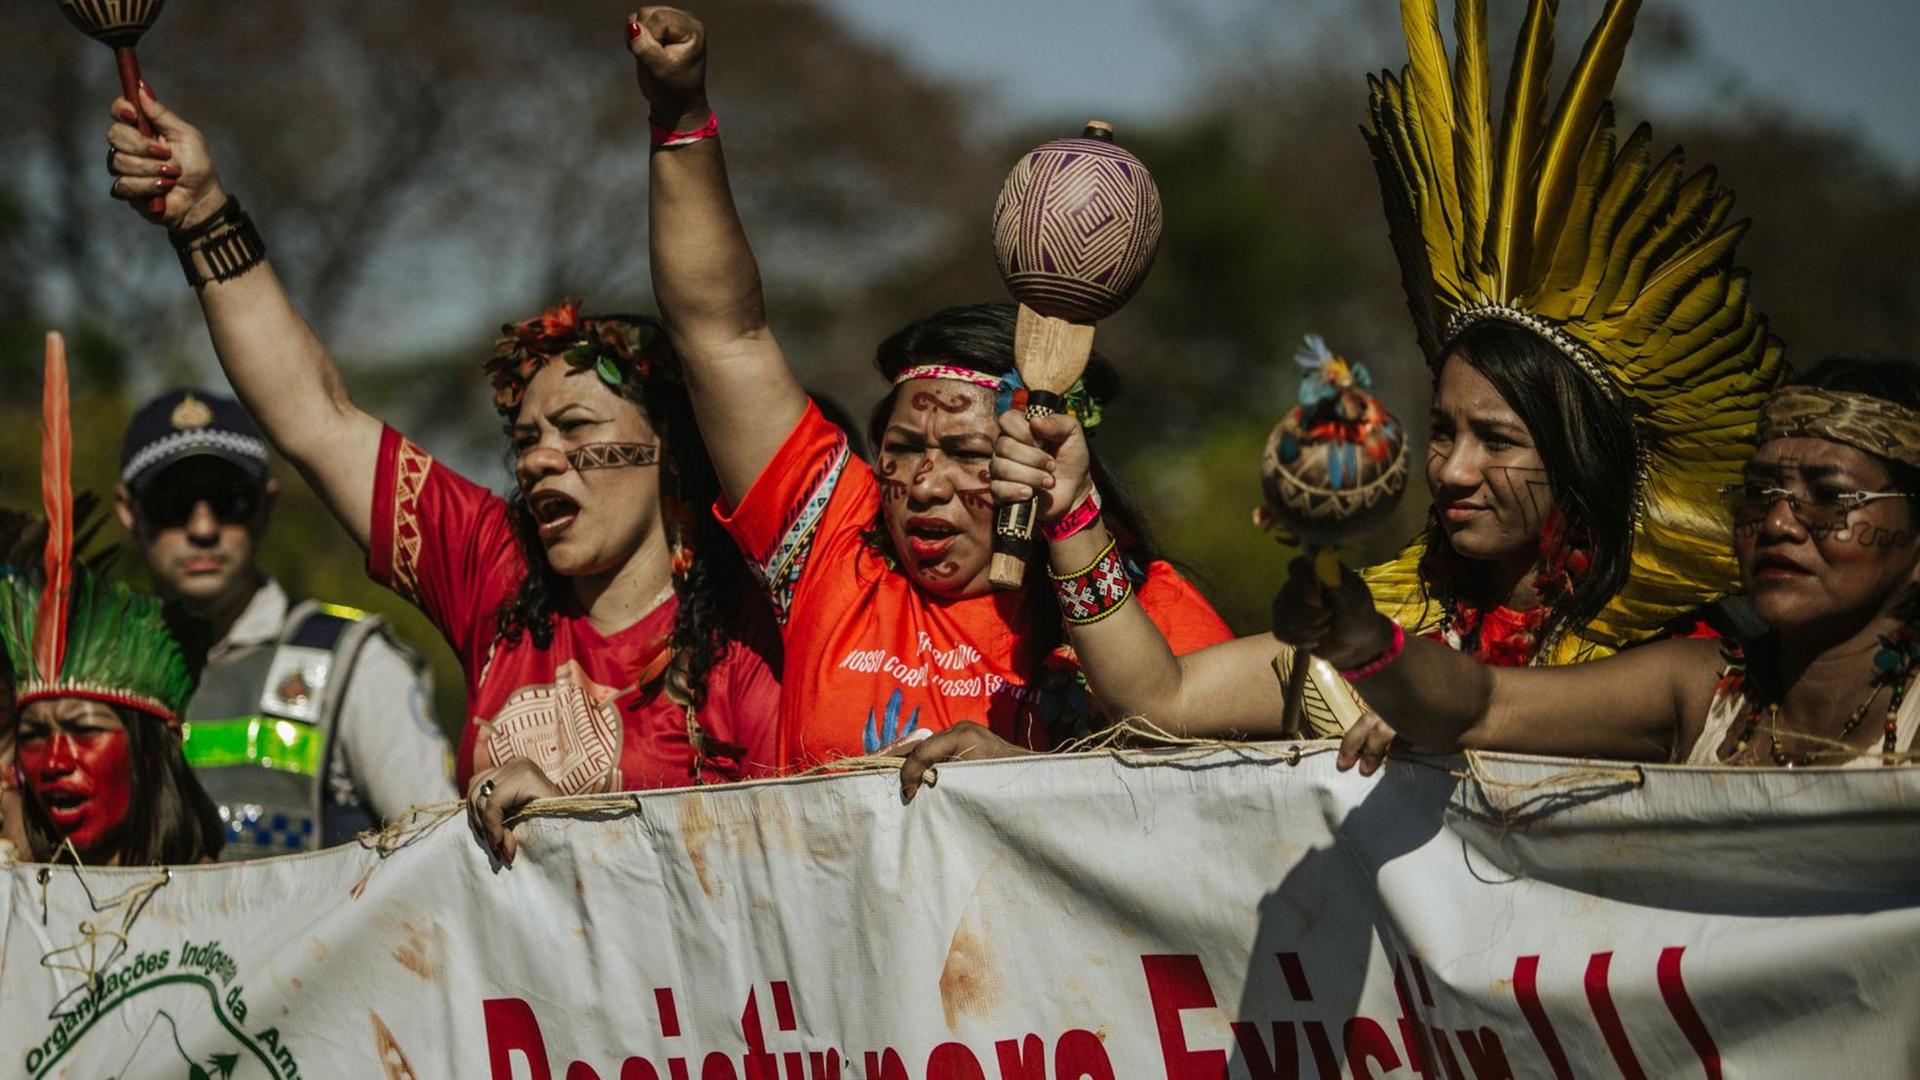 Indigene Frauen schreien politische Parolen bei einem Protest gegen die Umweltpolitik des rechten Präsidenten Bolsonaro und den Verlust ihrer traditionellen Siedlungsgebiete. Bolsonaro will vor allem das Amazonasgebiet stärker wirtschaftlich nutzen und weitere Rodungen zulassen.